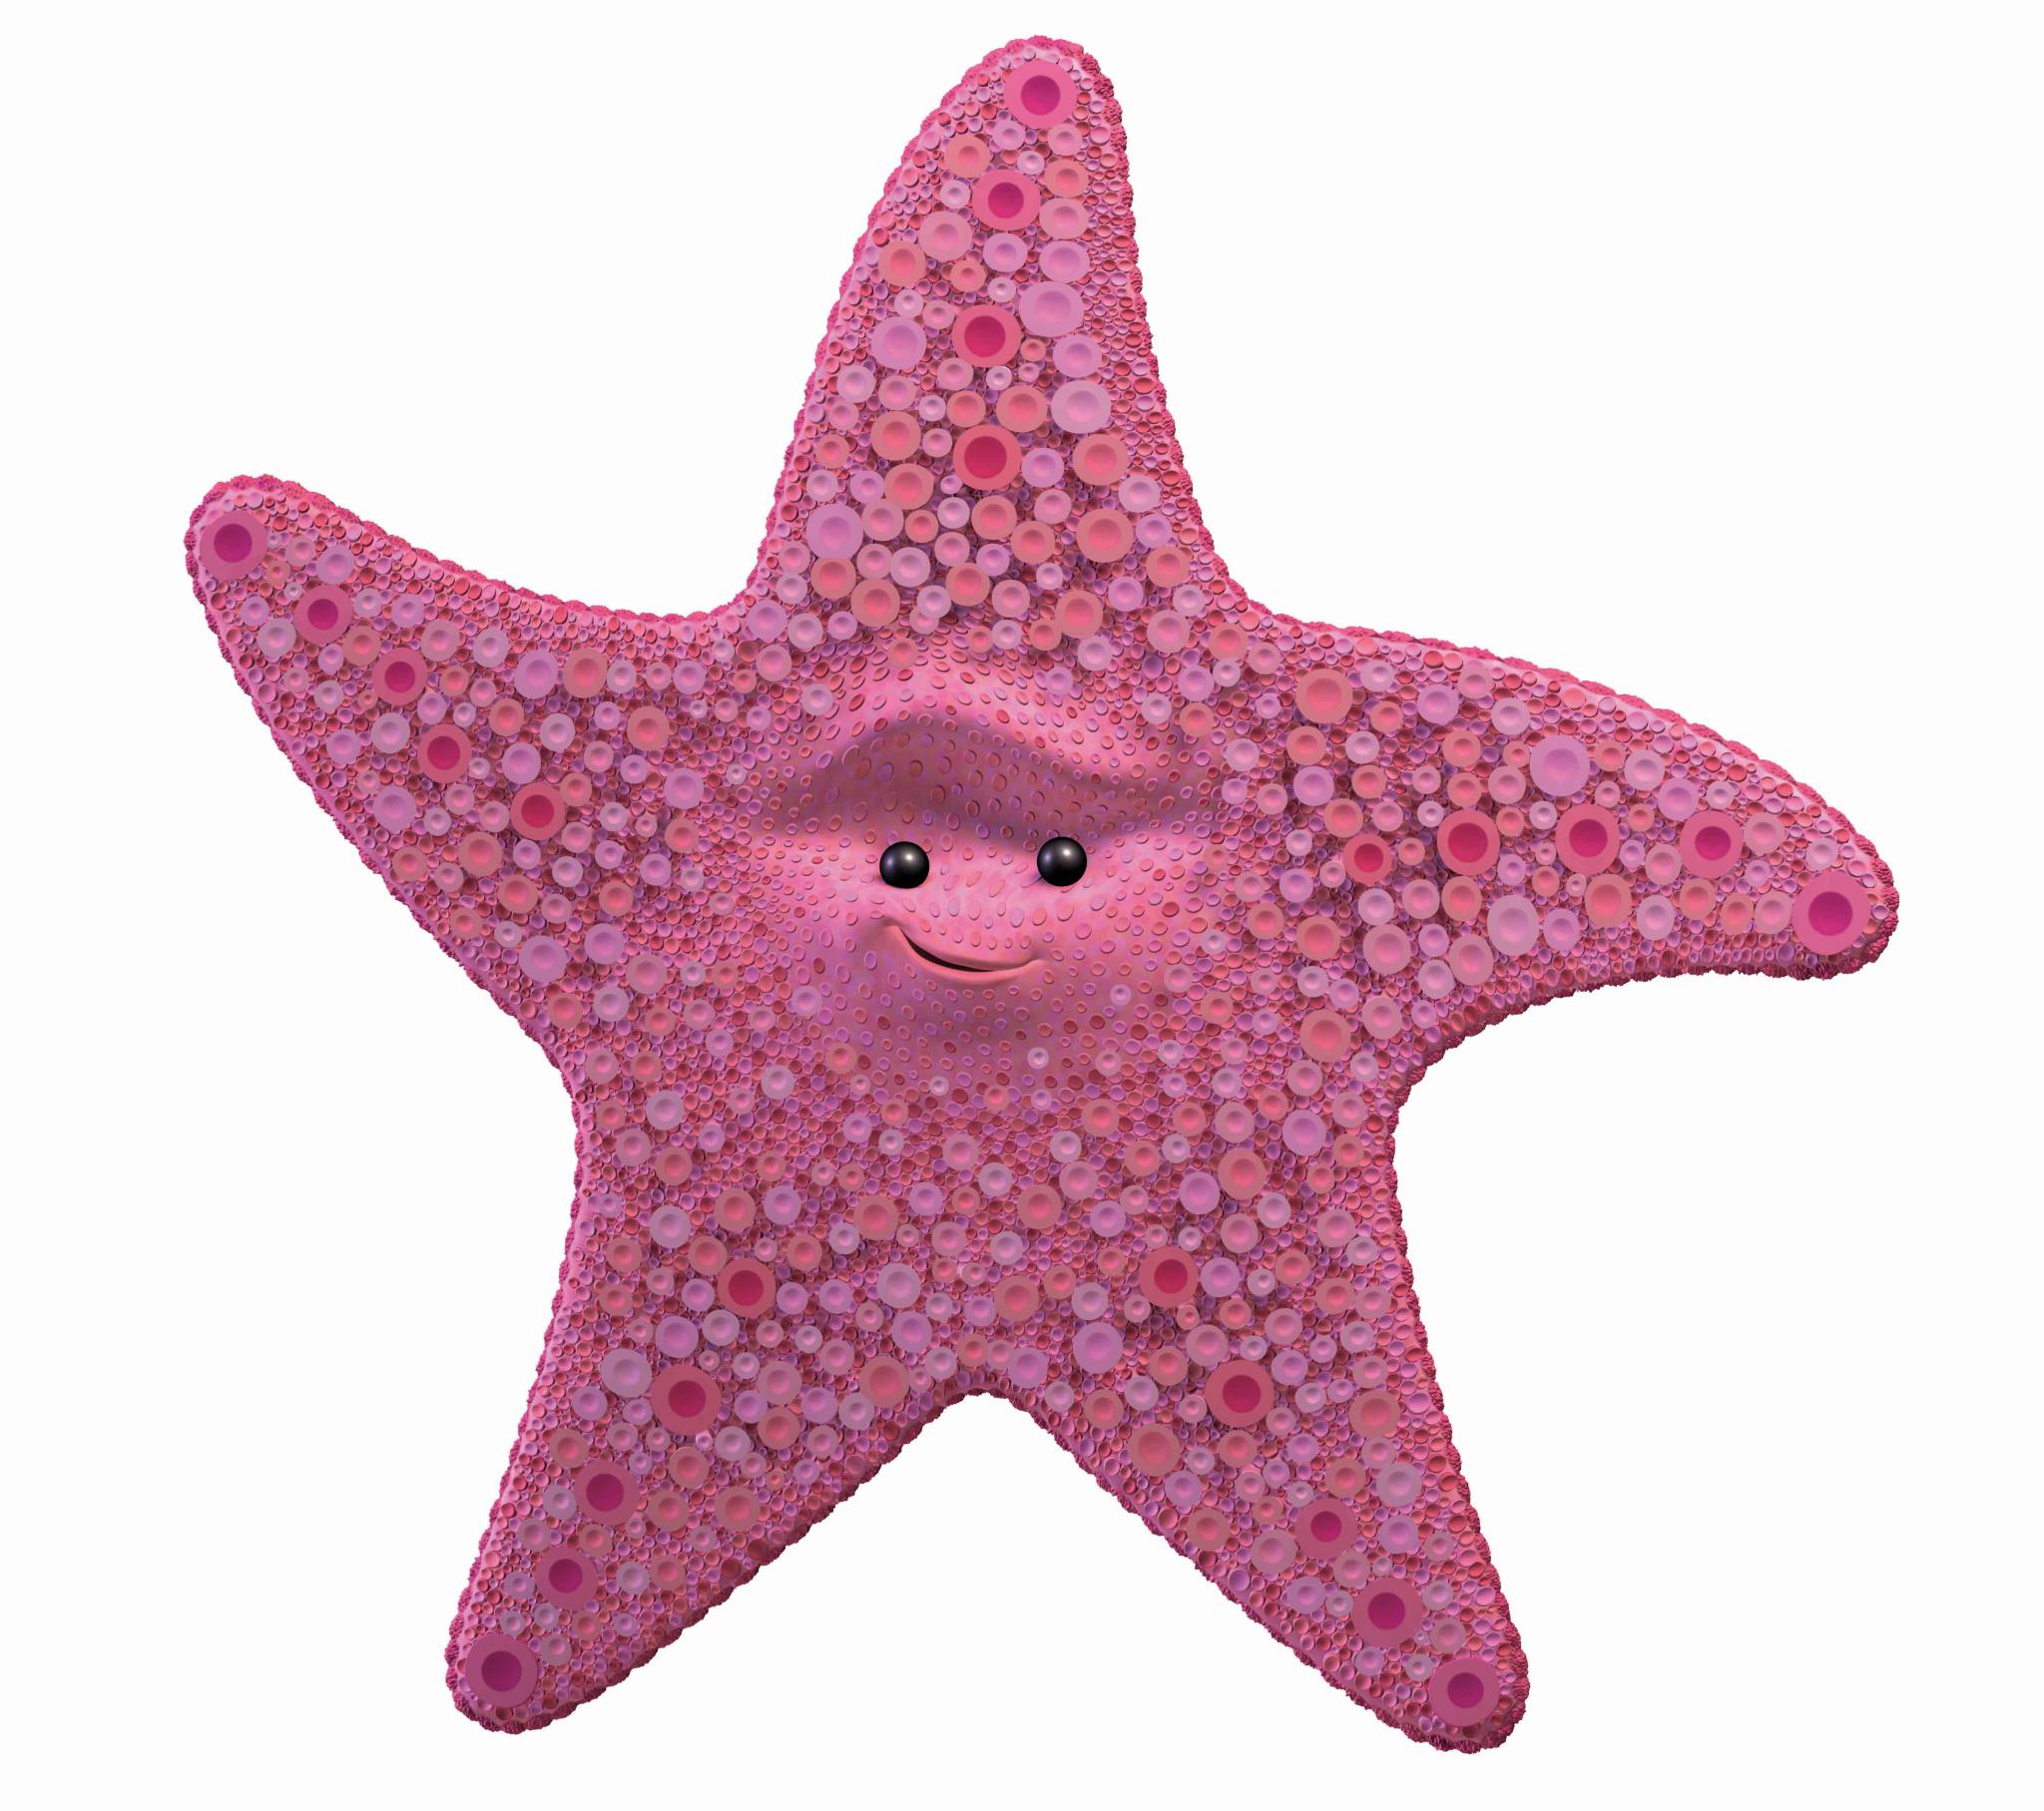 Найти морскую звезду. Морская звезда Немо. В поисках Немо морская звезда. Морская звезда из Немо.